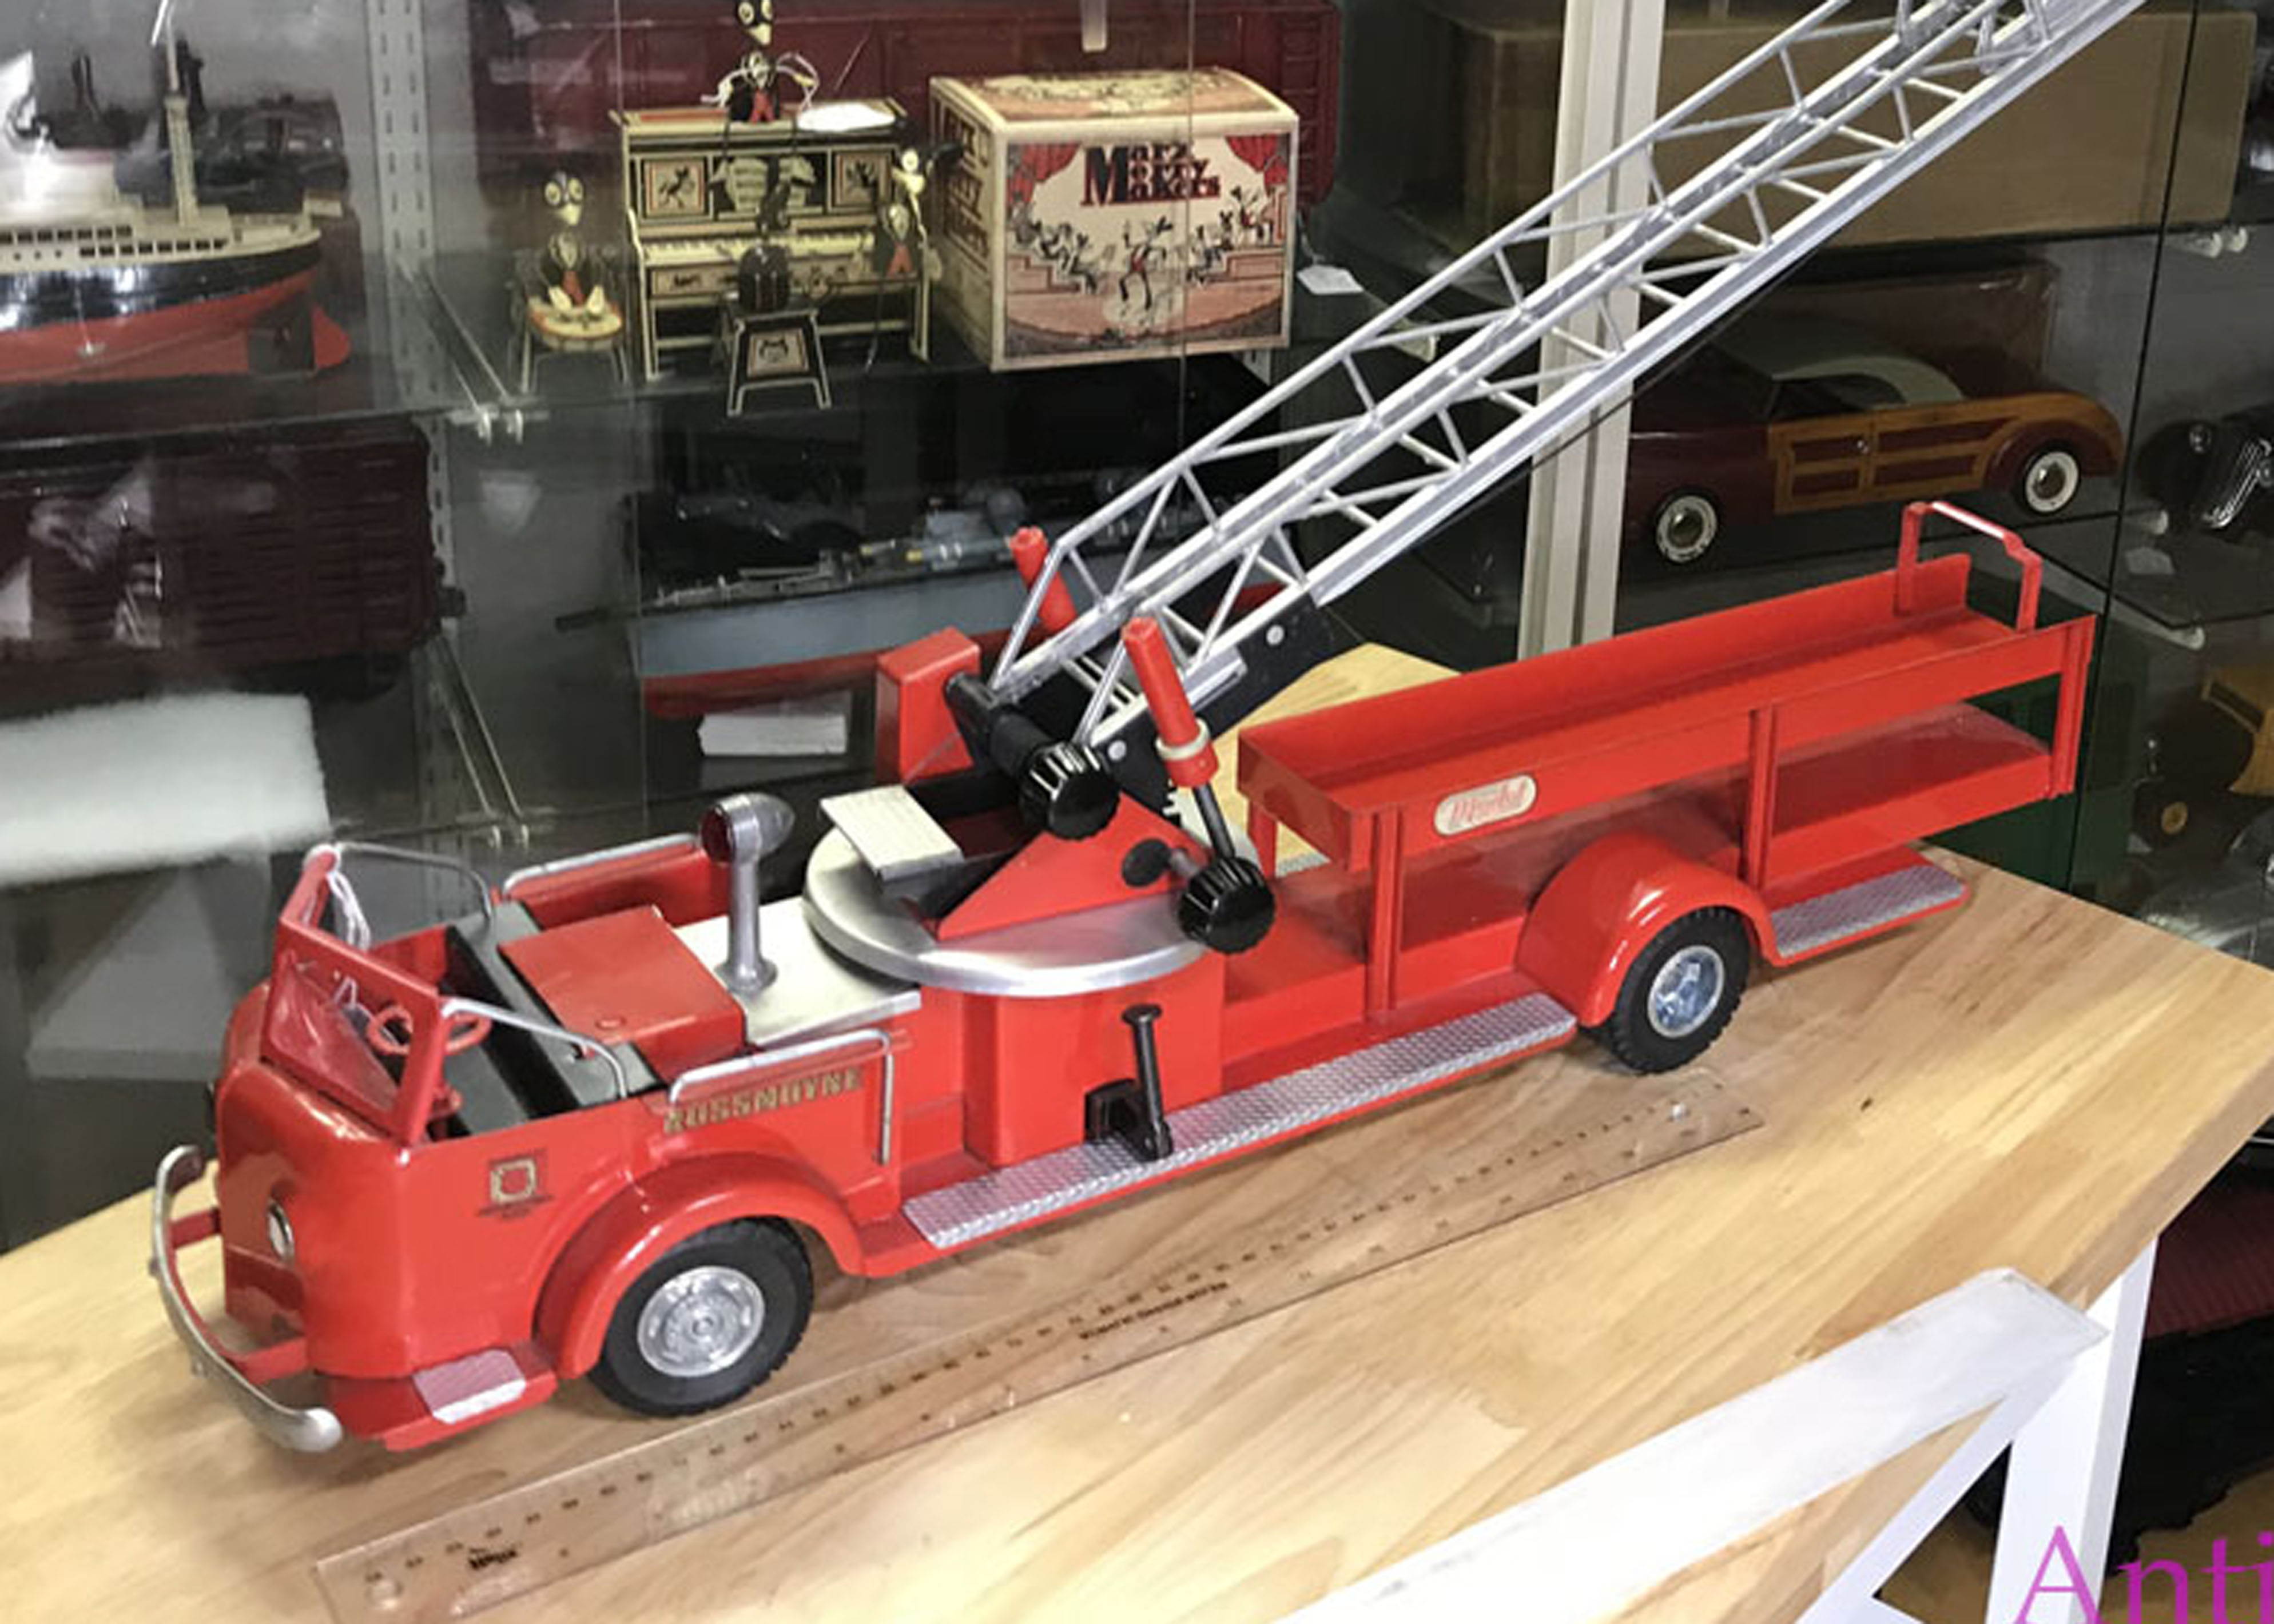 Doepke Charles Doepke Model Toys ROSSMOYNE Ohio Fire Ladder Truck 